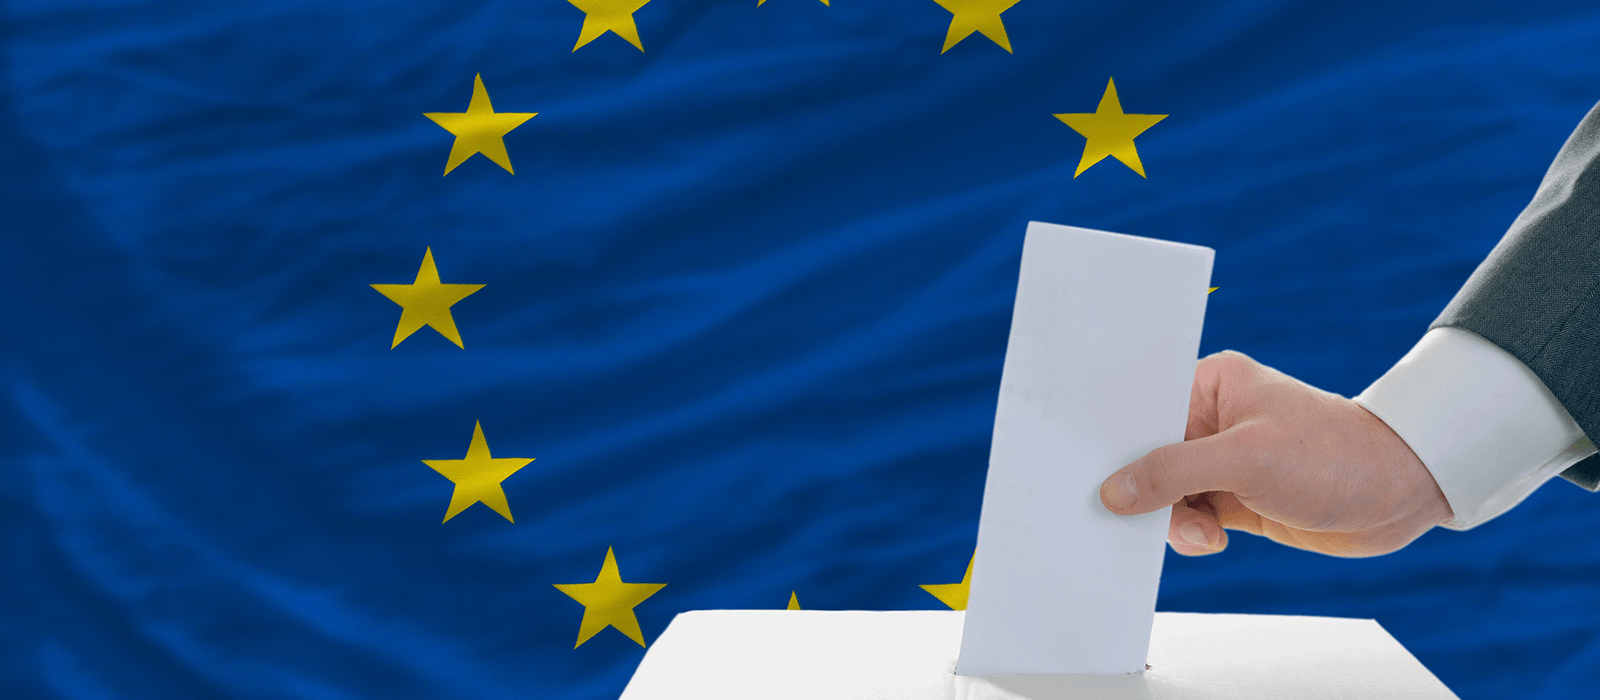 Ευρωεκλογές 2019: Τι προνόμια απολαμβάνουν οι ευρωβουλευτές και τι μισθούς παίρνουν